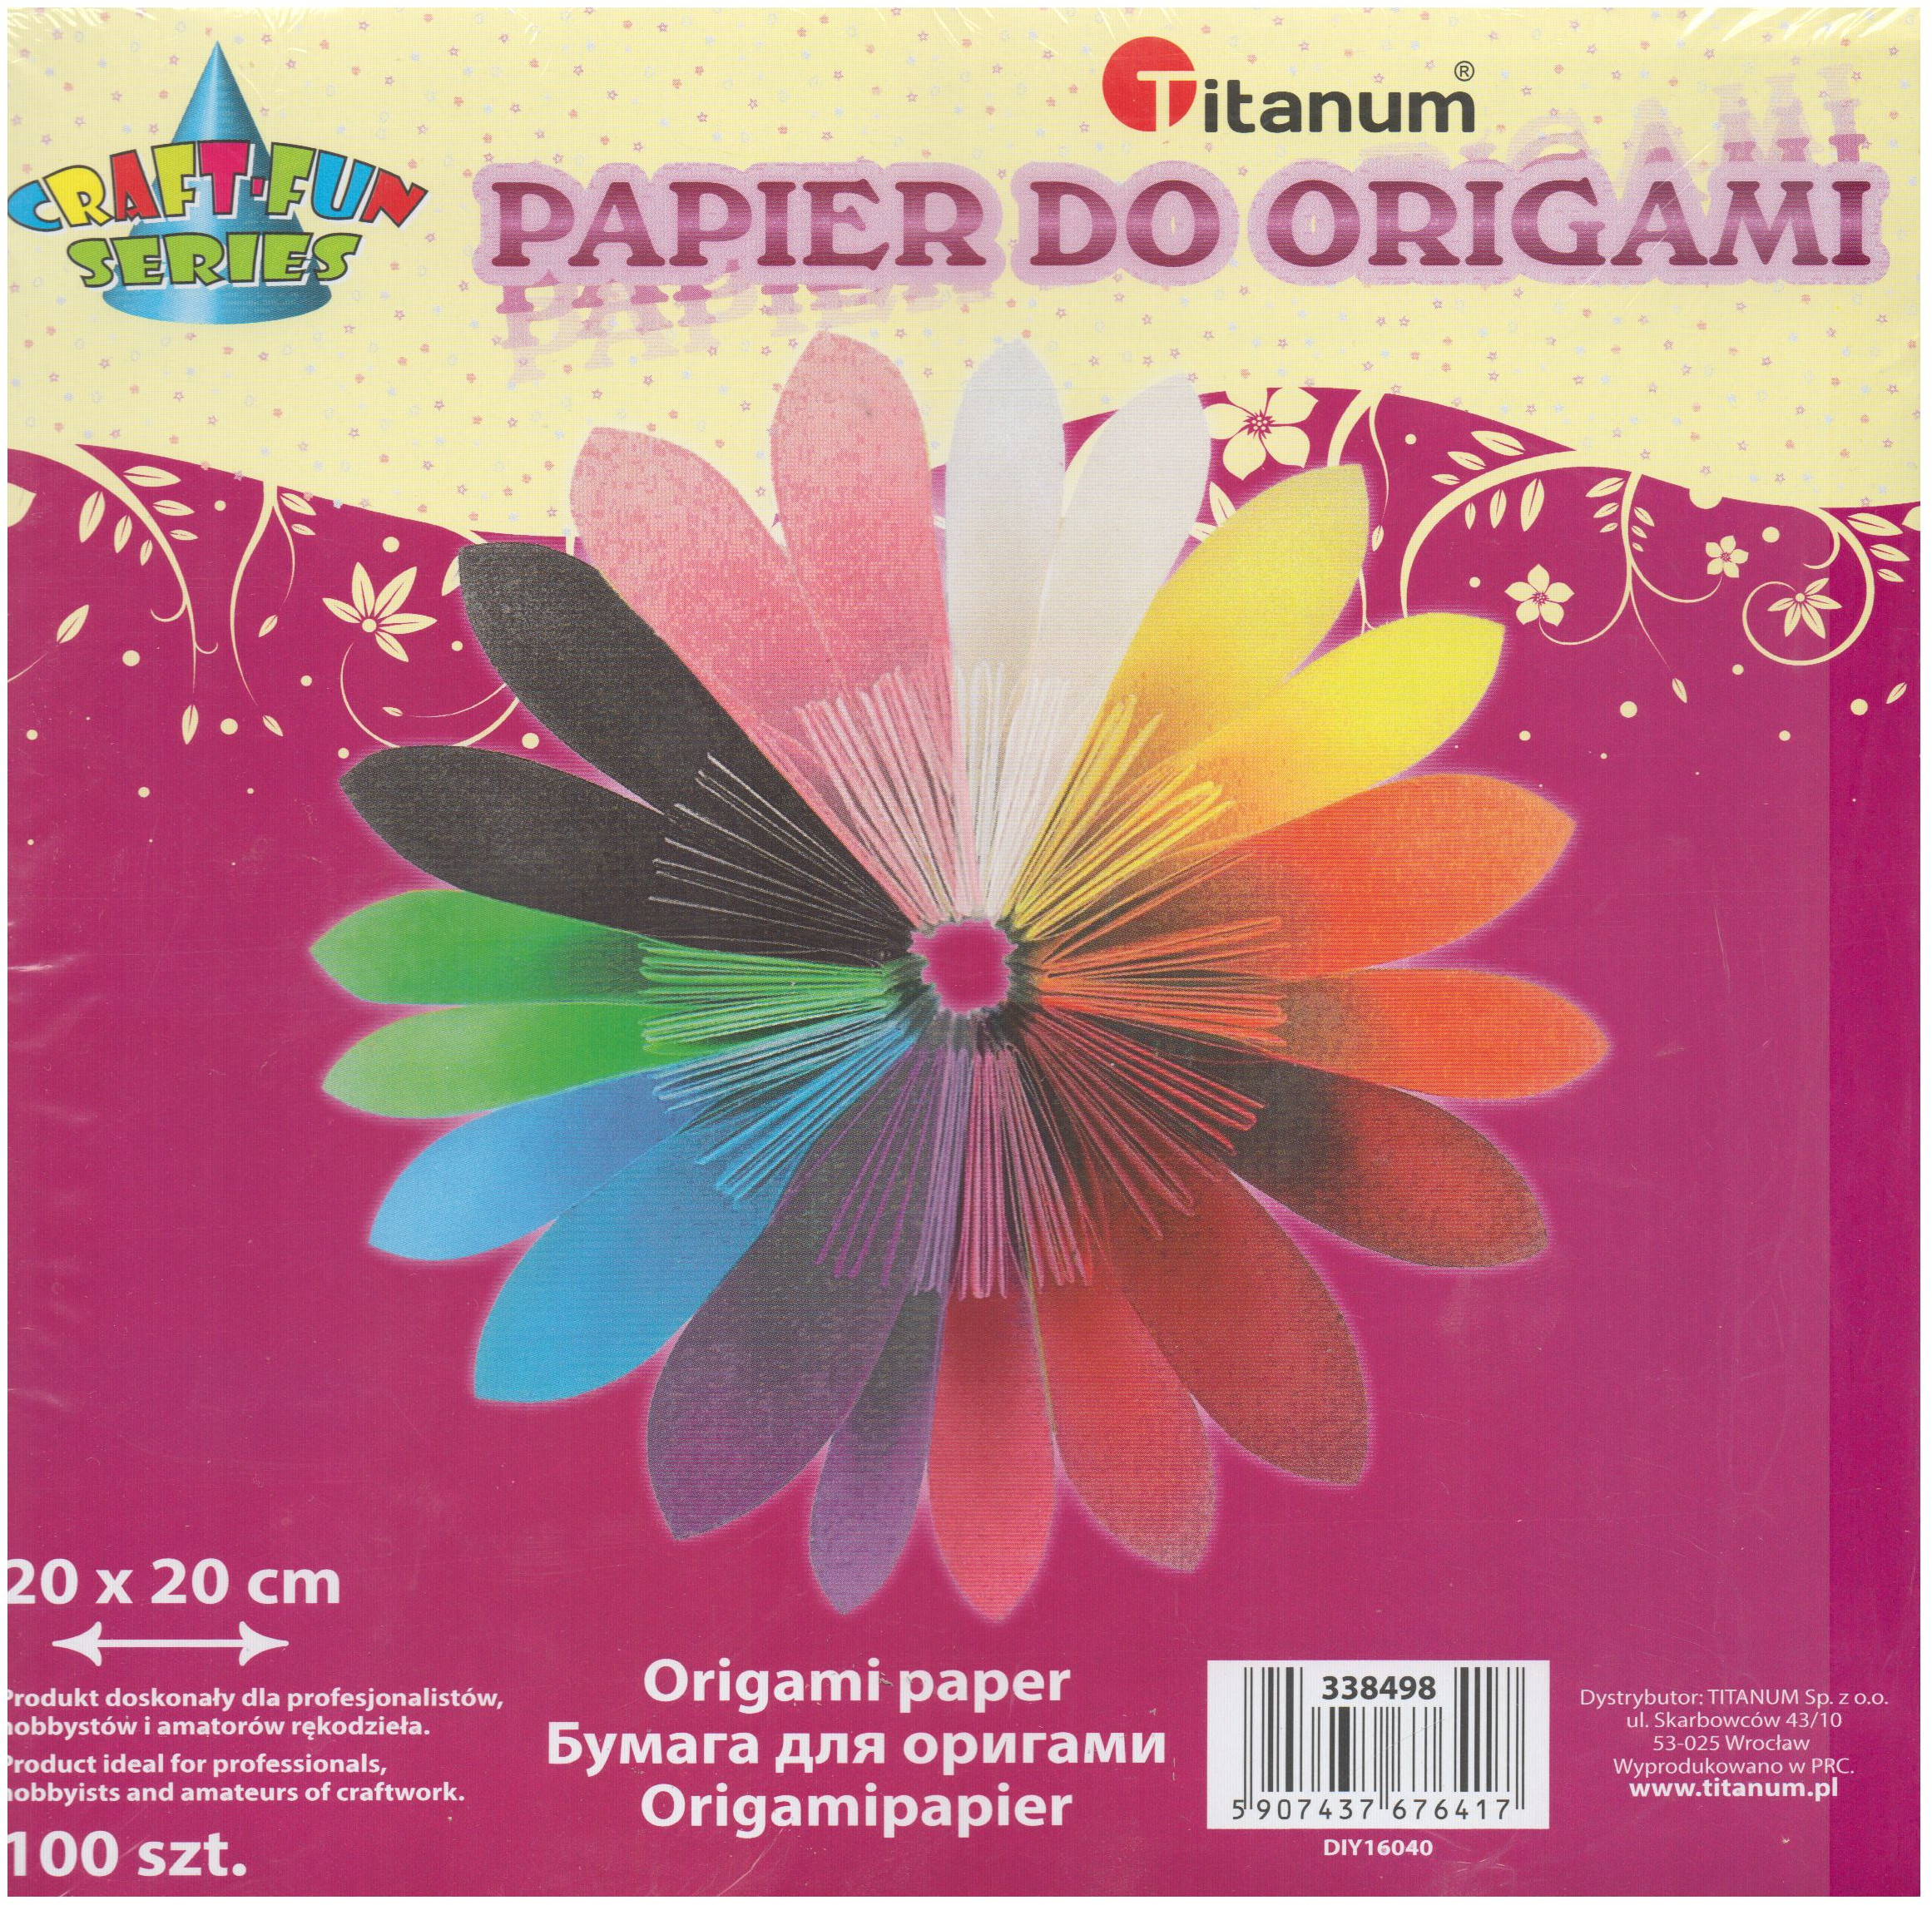 Titanum Papier do origami 20 x 20 cm 100 arkuszy 338498